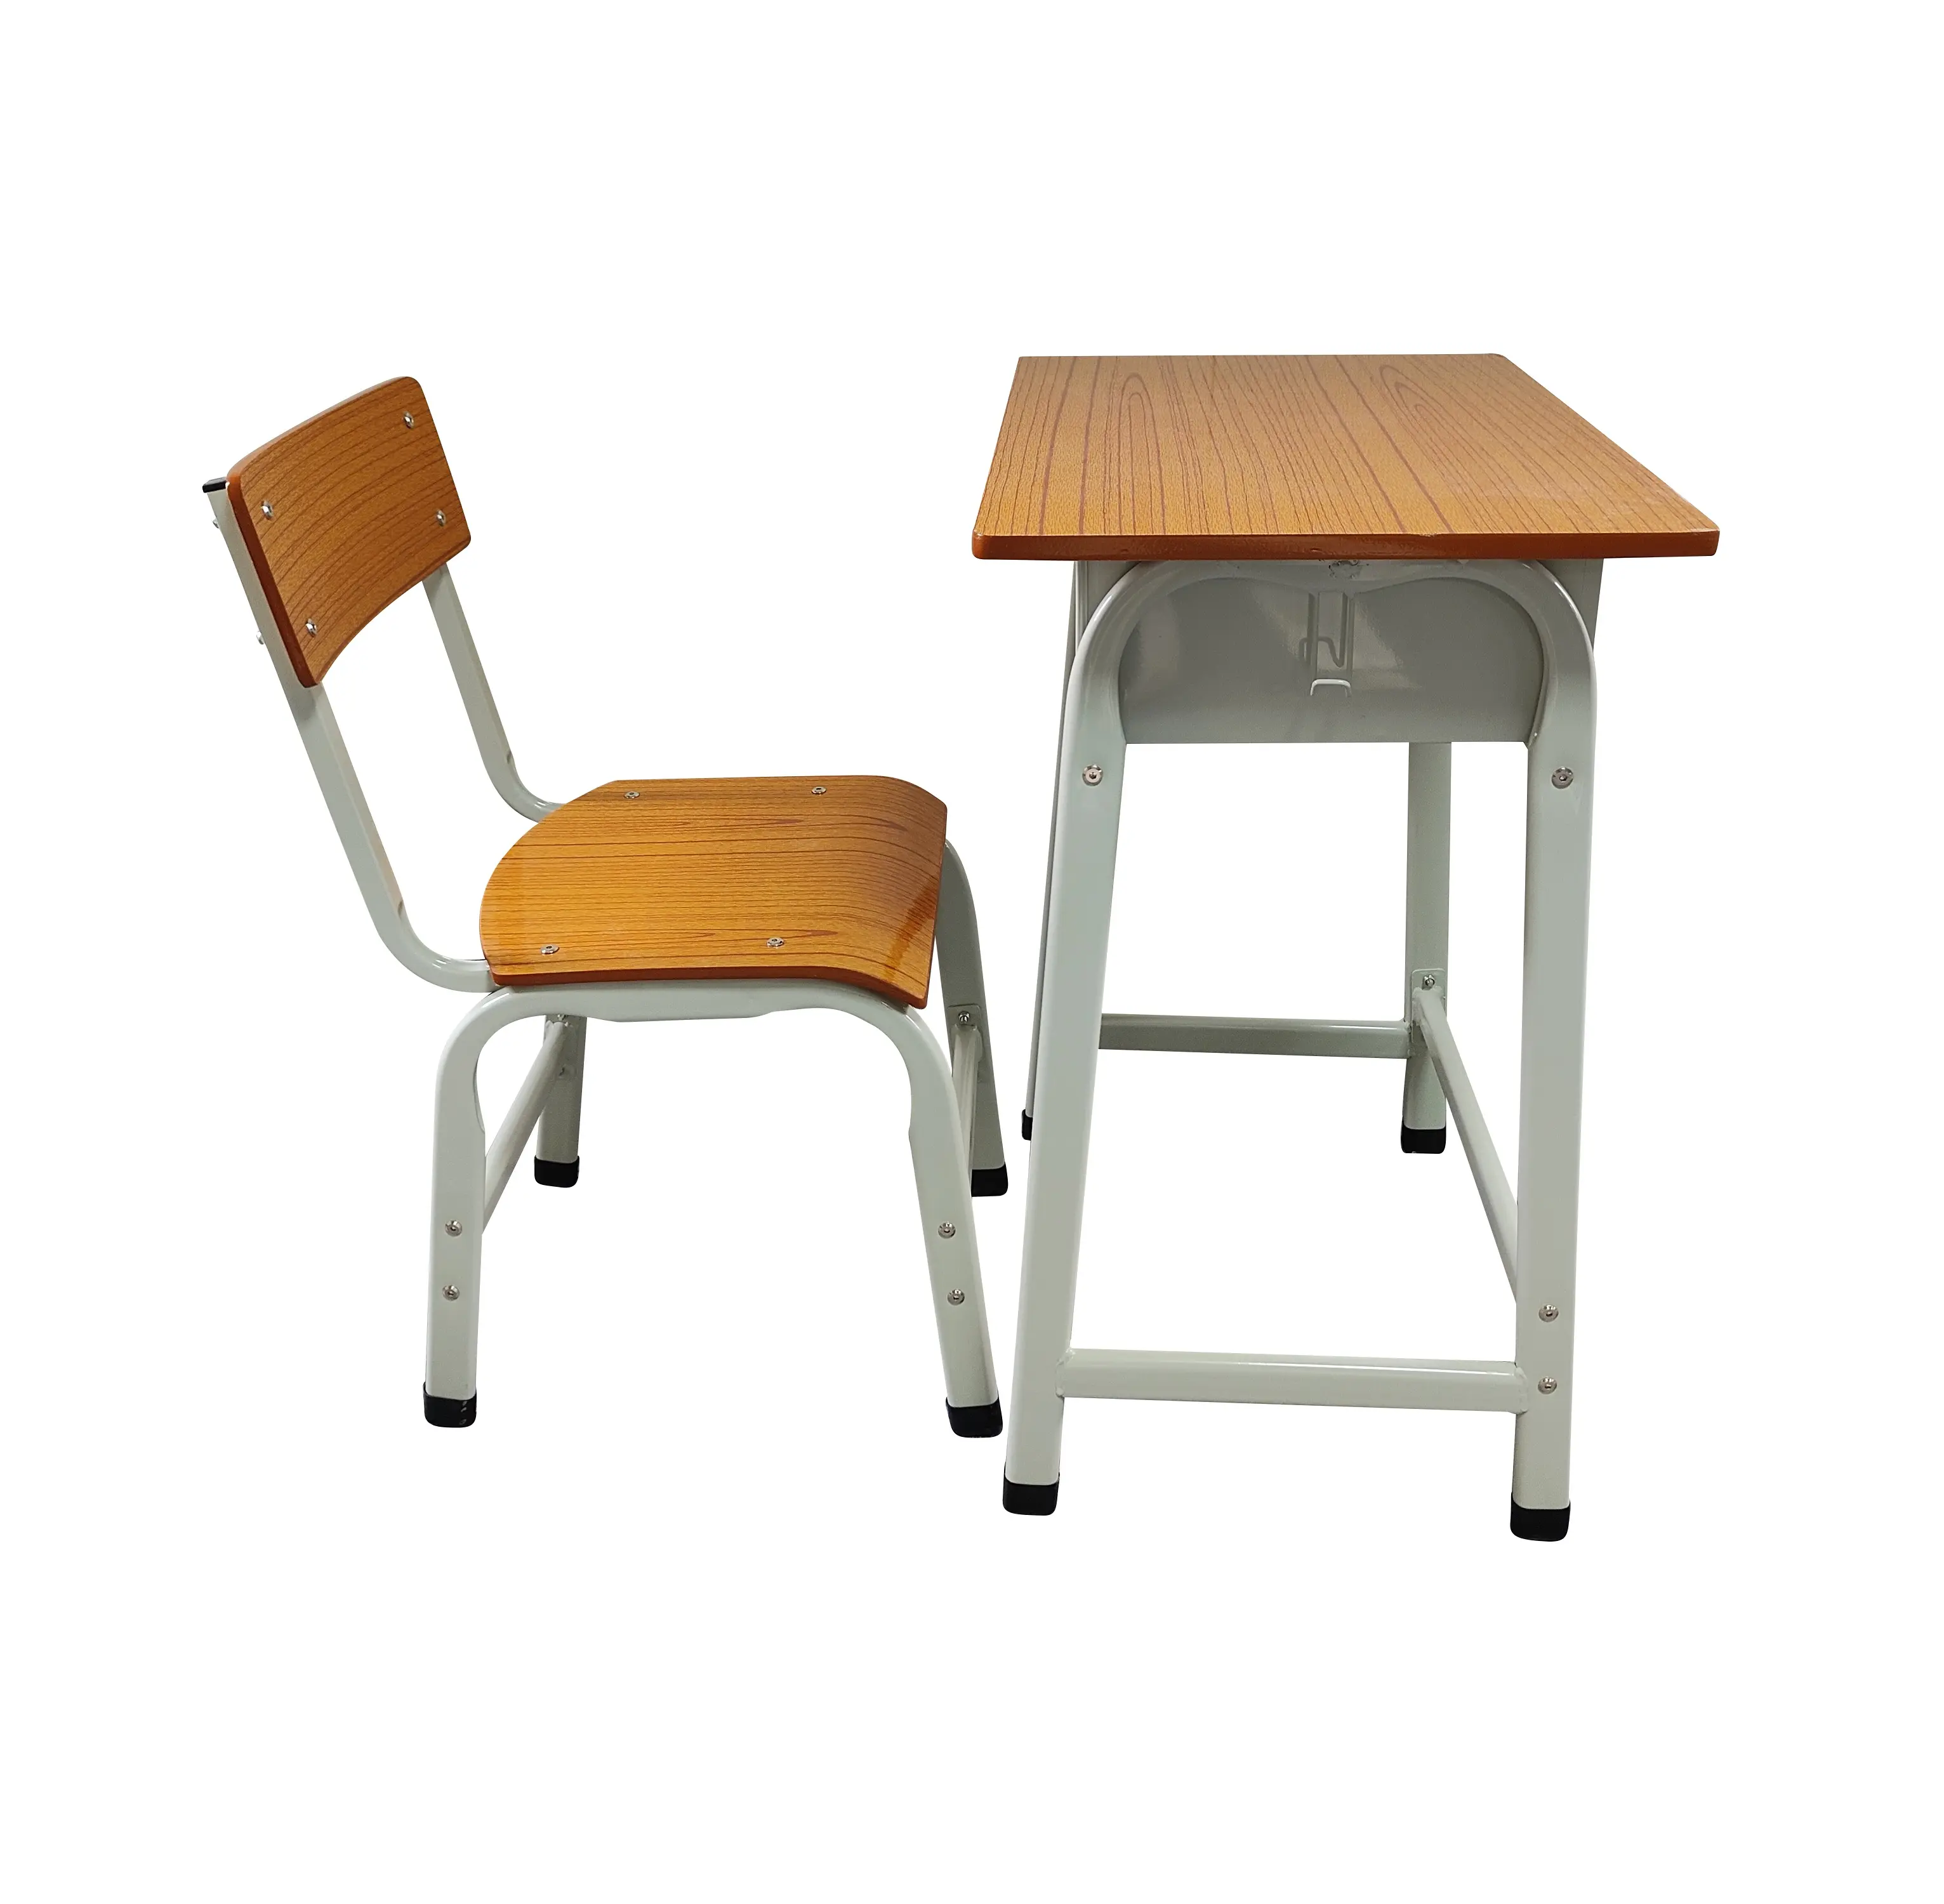 Ucuz Metal öğrenci masaları ve sandalyeler için Minimalist tasarım okul mobilya ev ofis yatak odası ve oturma odası için öğrenciler